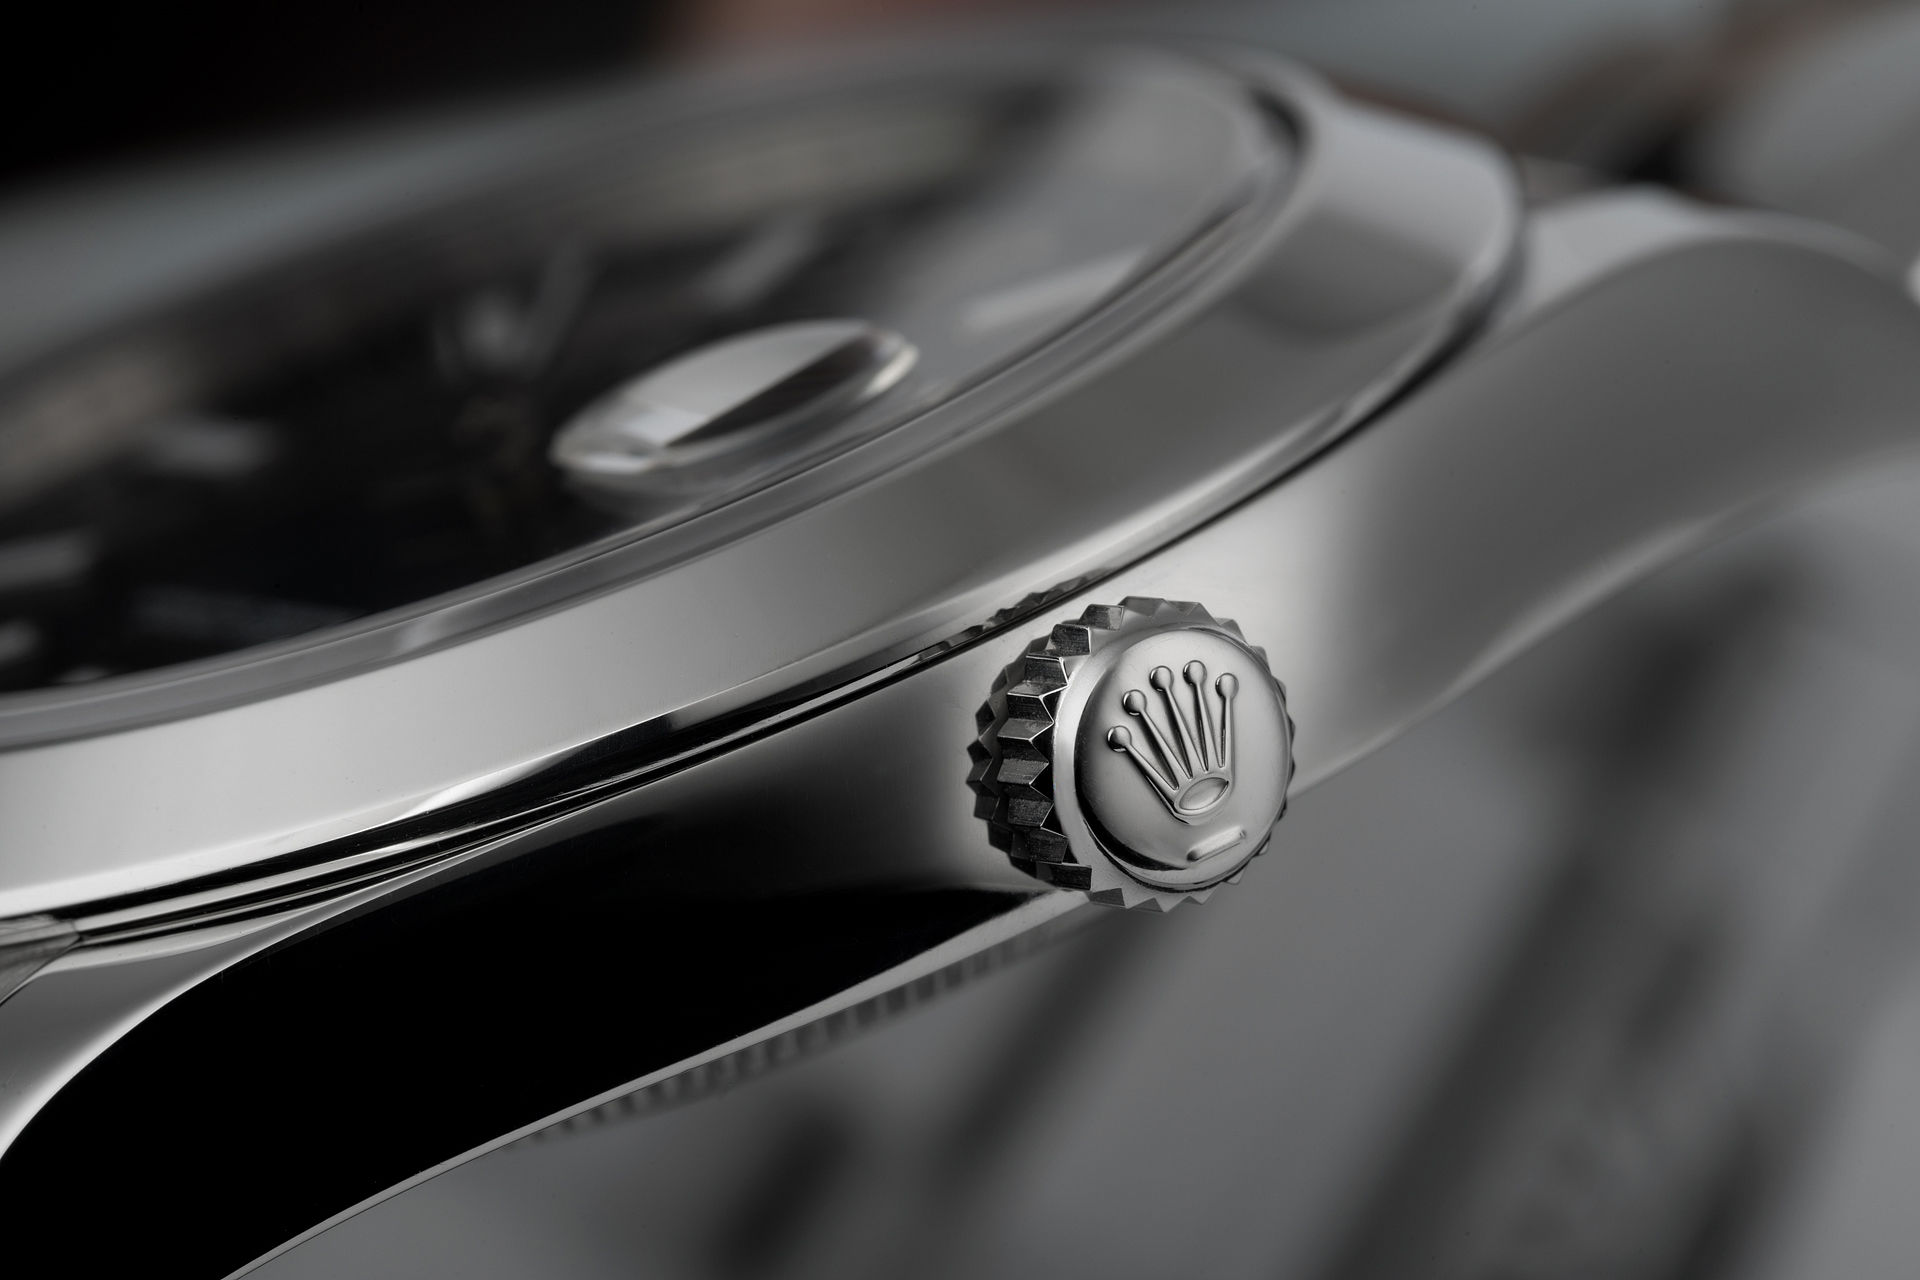 ref 116300 | 41mm 'Rolex Warranty' | Rolex Datejust II